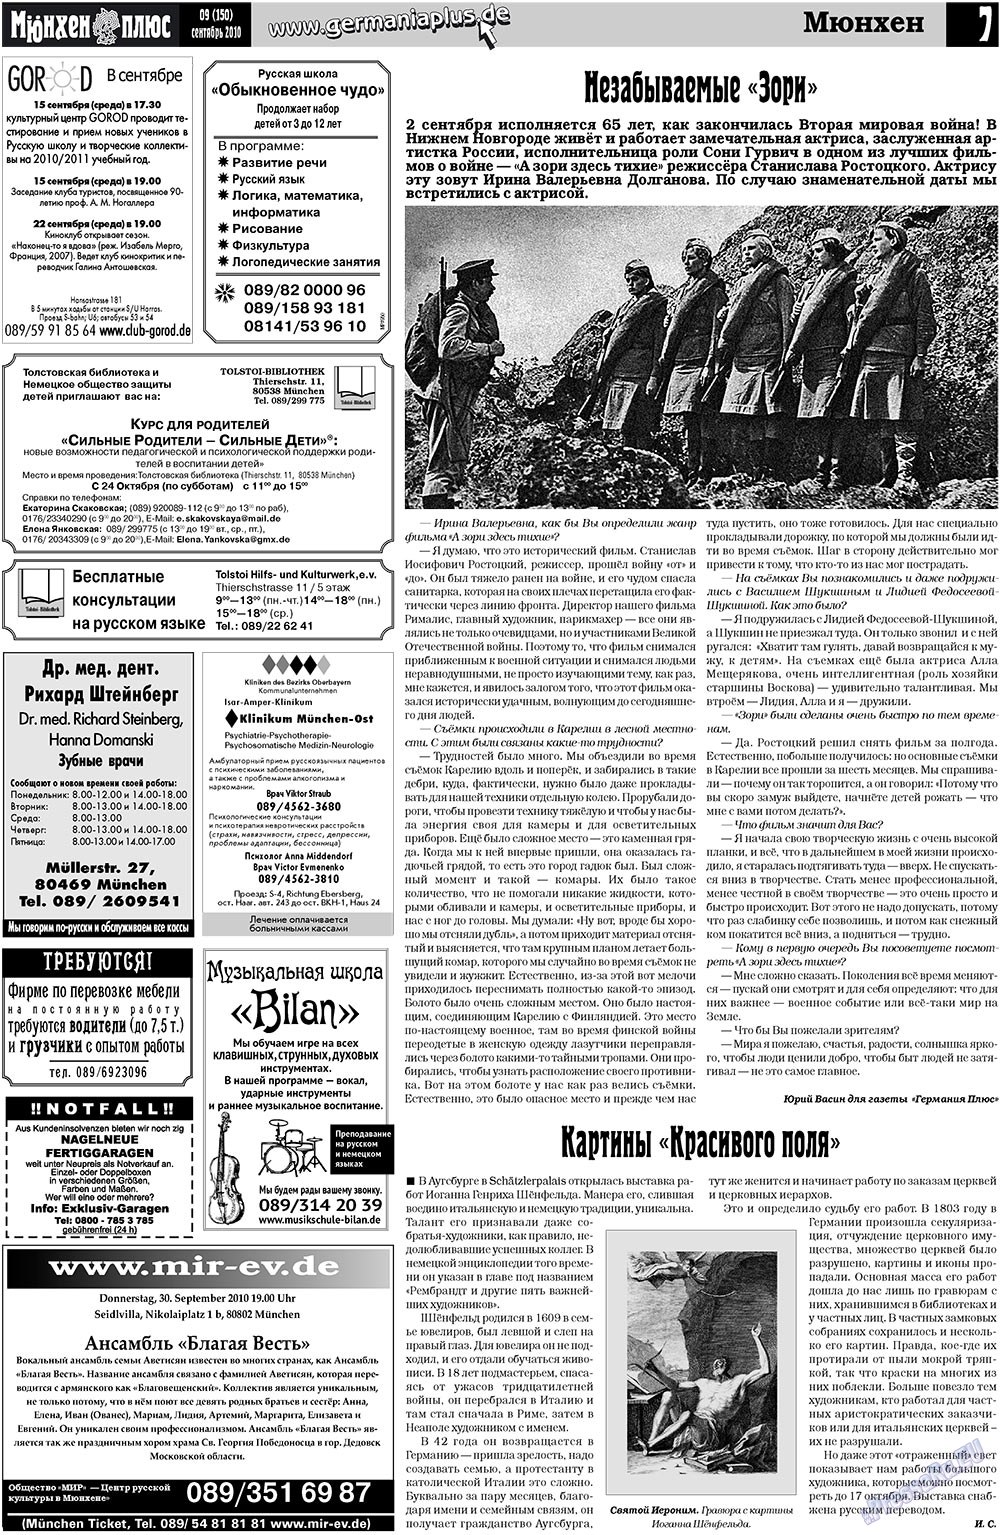 Германия плюс, газета. 2010 №9 стр.23